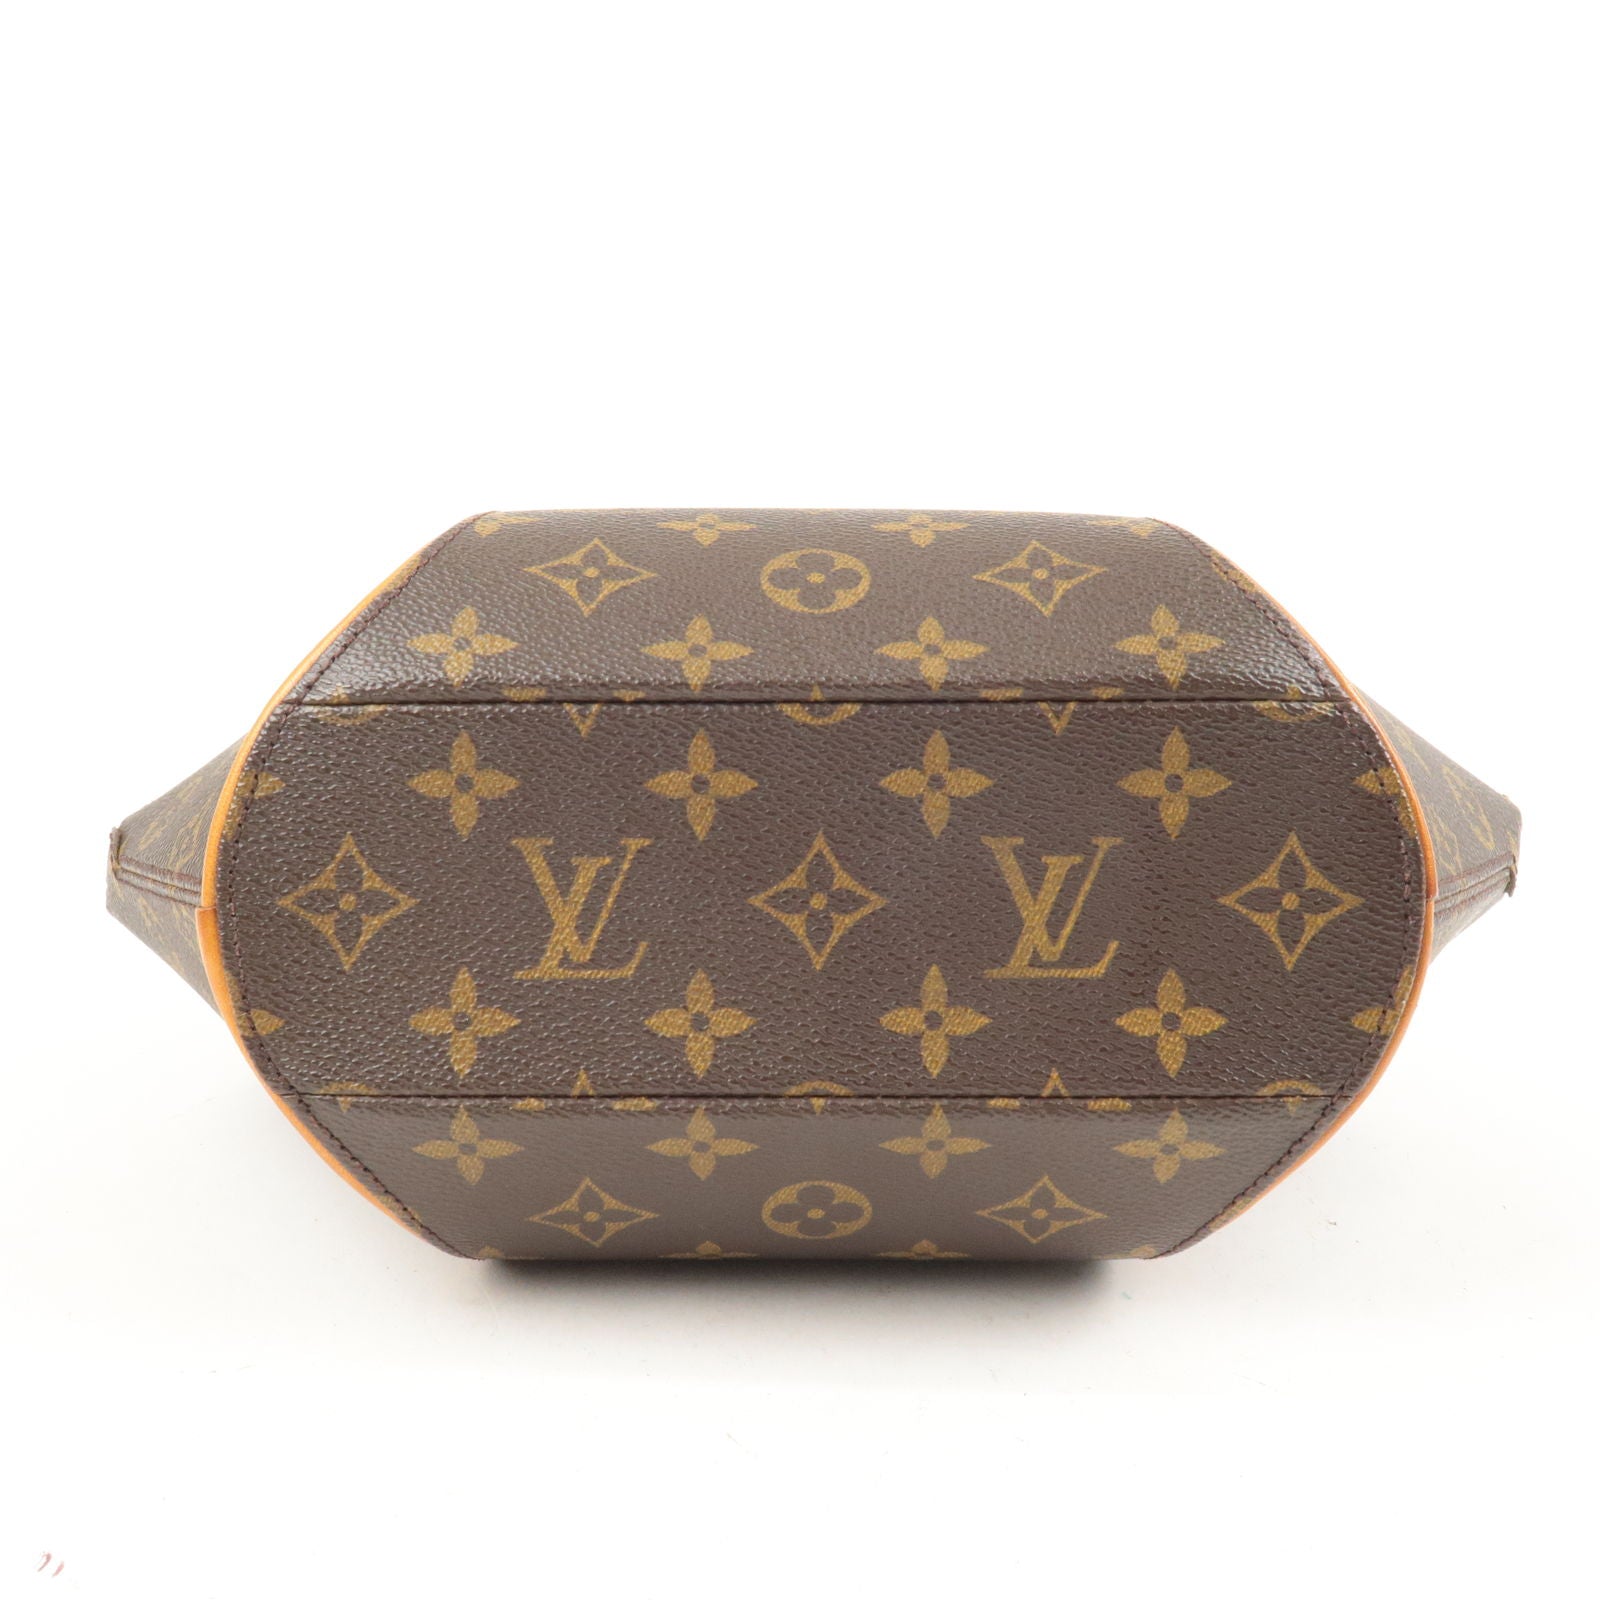 Authentic Louis Vuitton Monogram Ellipse PM Tote Hand Bag DHL EMS